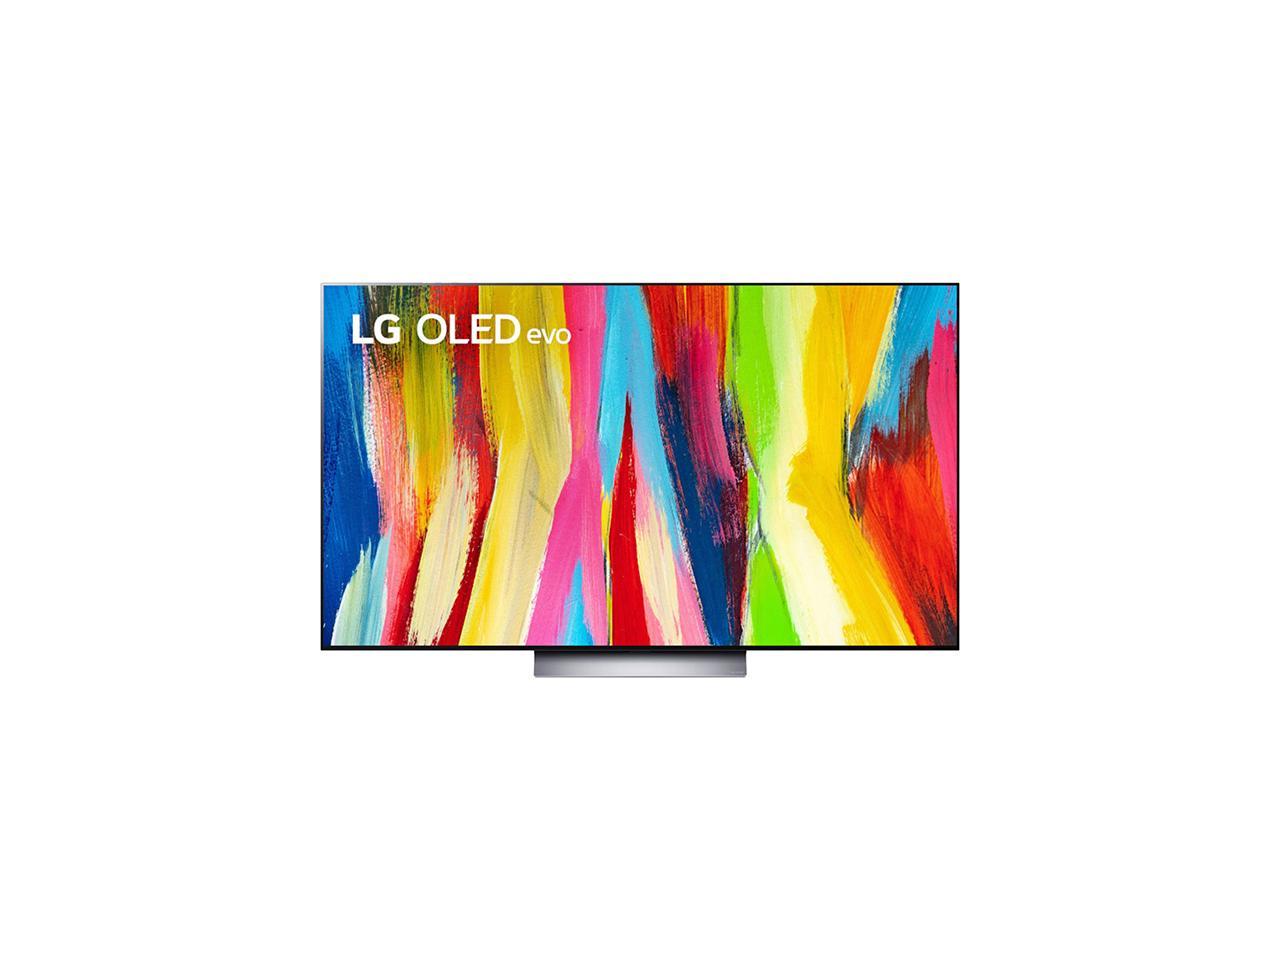 LG C2 OLED TV's: 65" OLED65C2PUA $1249, 77" OLED77C2PUA $1999 + free s/h